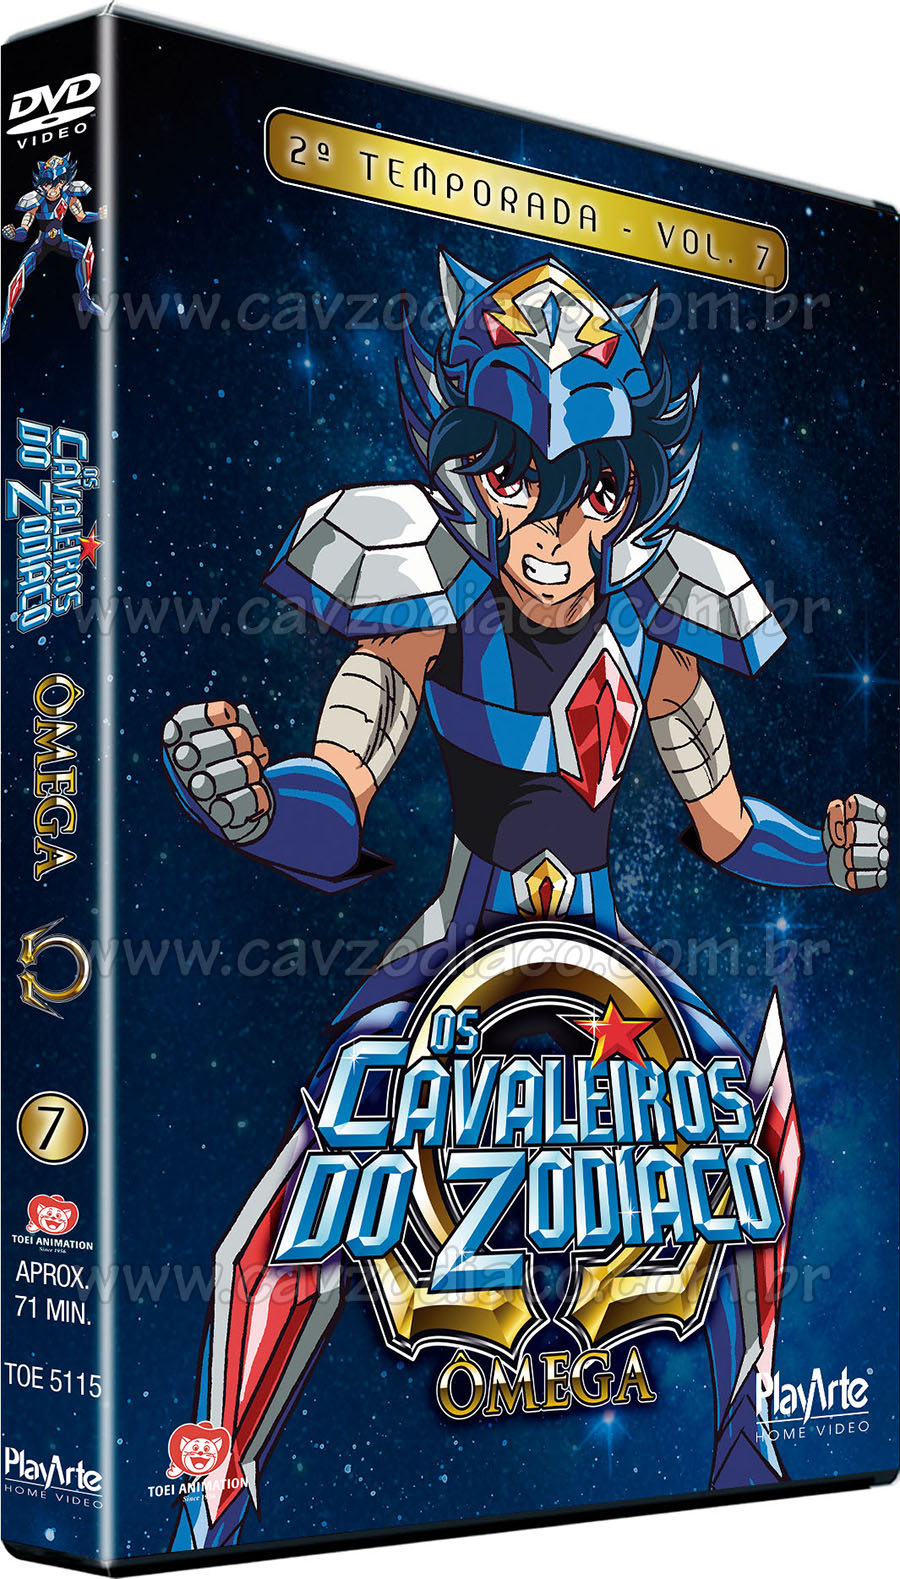 DVD - Os Cavaleiros do Zodíaco - Ômega Vol. 3